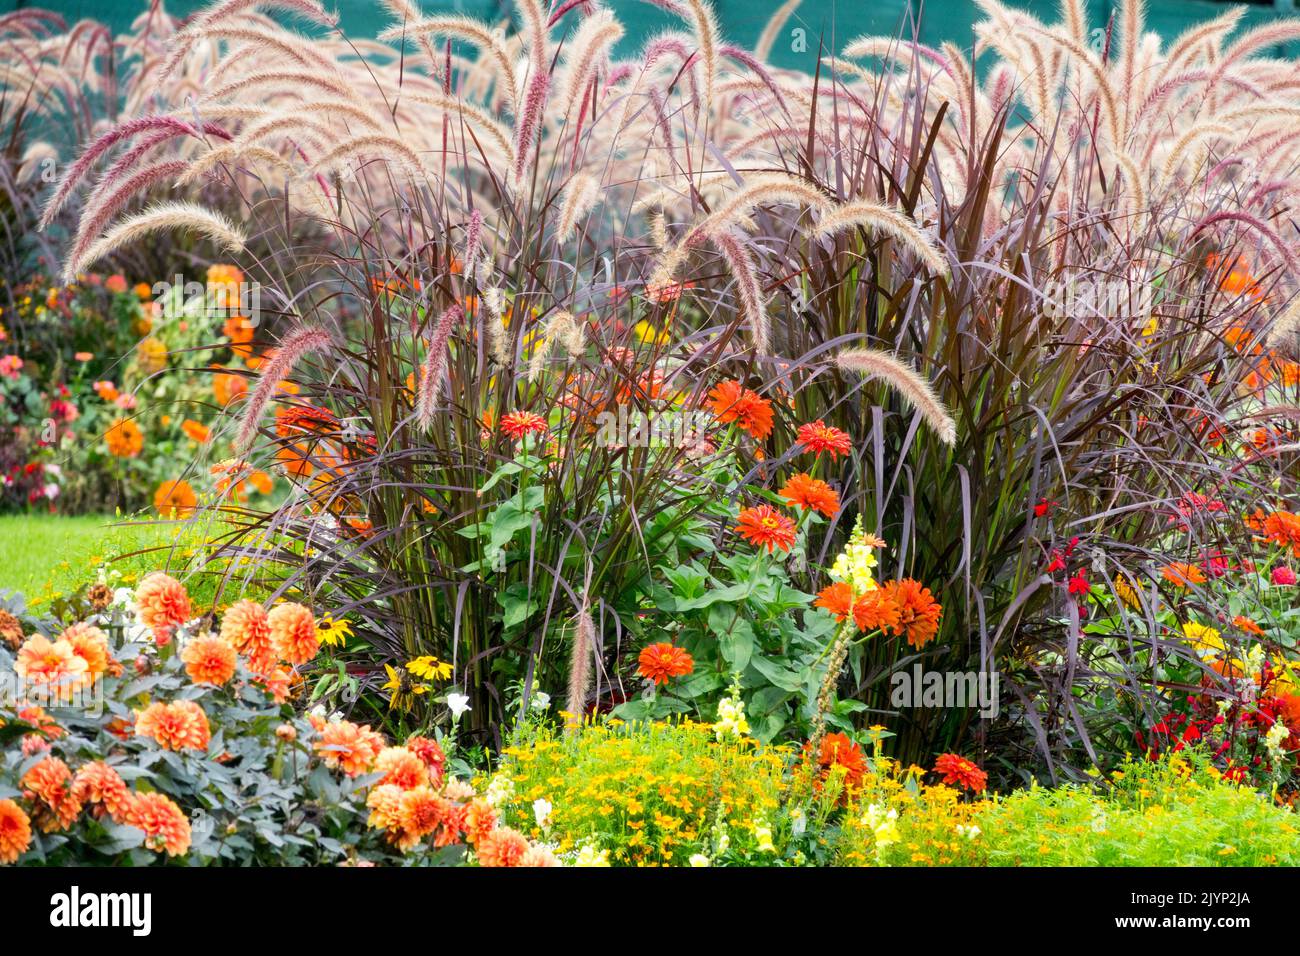 Plantes vivaces d'automne herbes frontière, jardin, Pennisetum setaceum 'rubrum', Dahlias Zinnies jardin d'automne pittoresque jardin horticole Banque D'Images